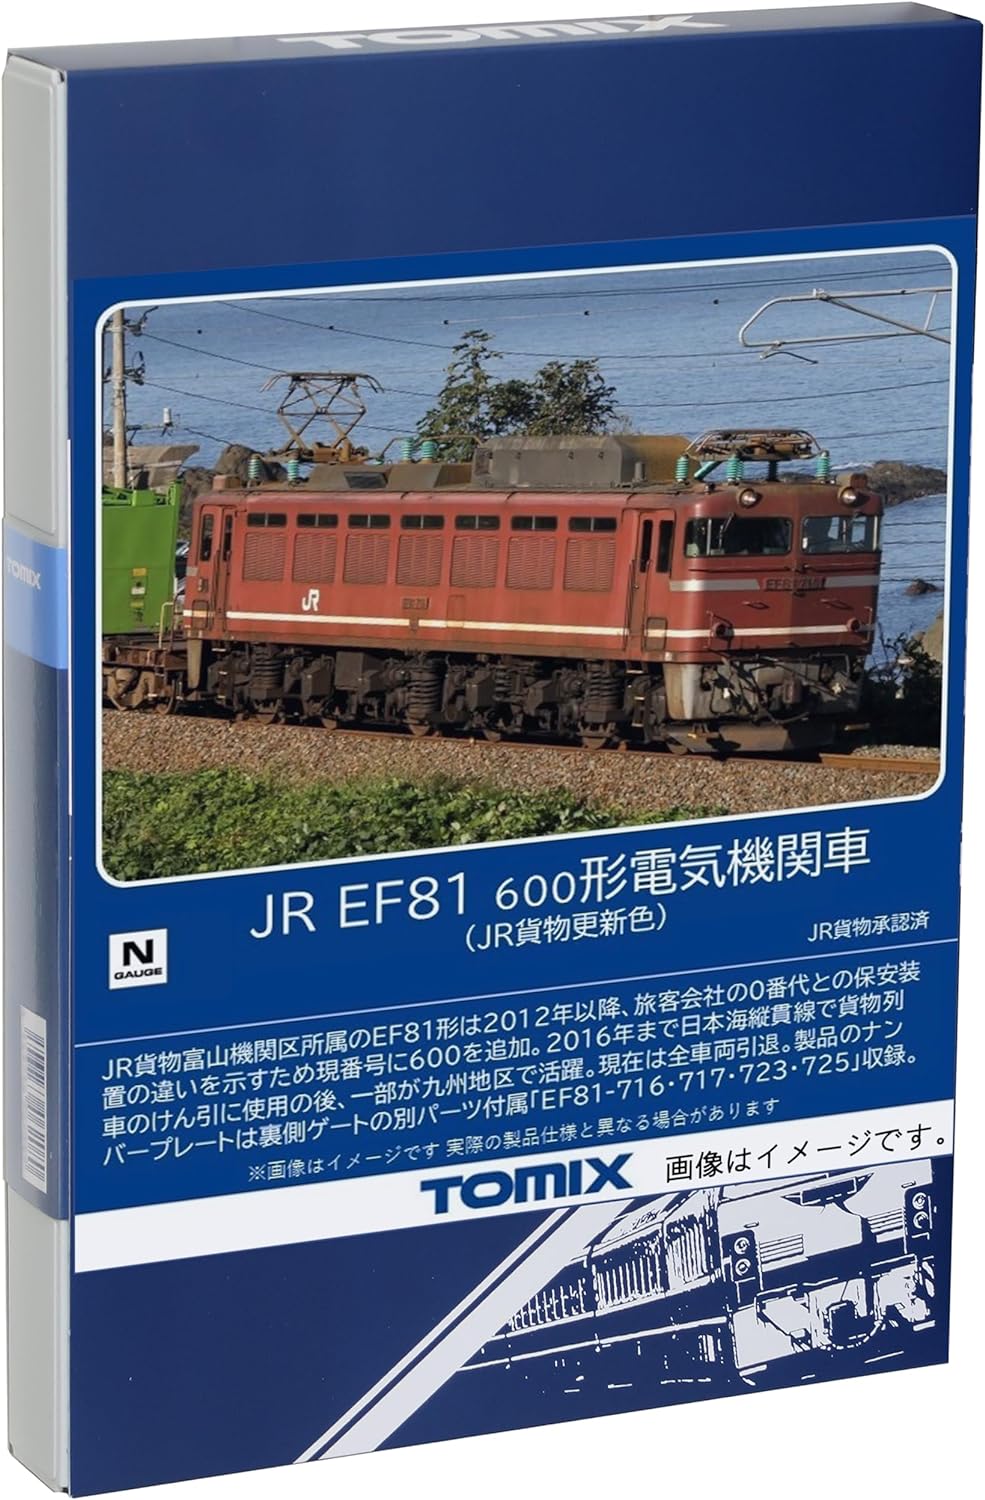 TOMIX 7180 N Gauge JR EF81 Type 600 JR Cargo Update Color Railway Model Electric Locomotive - BanzaiHobby